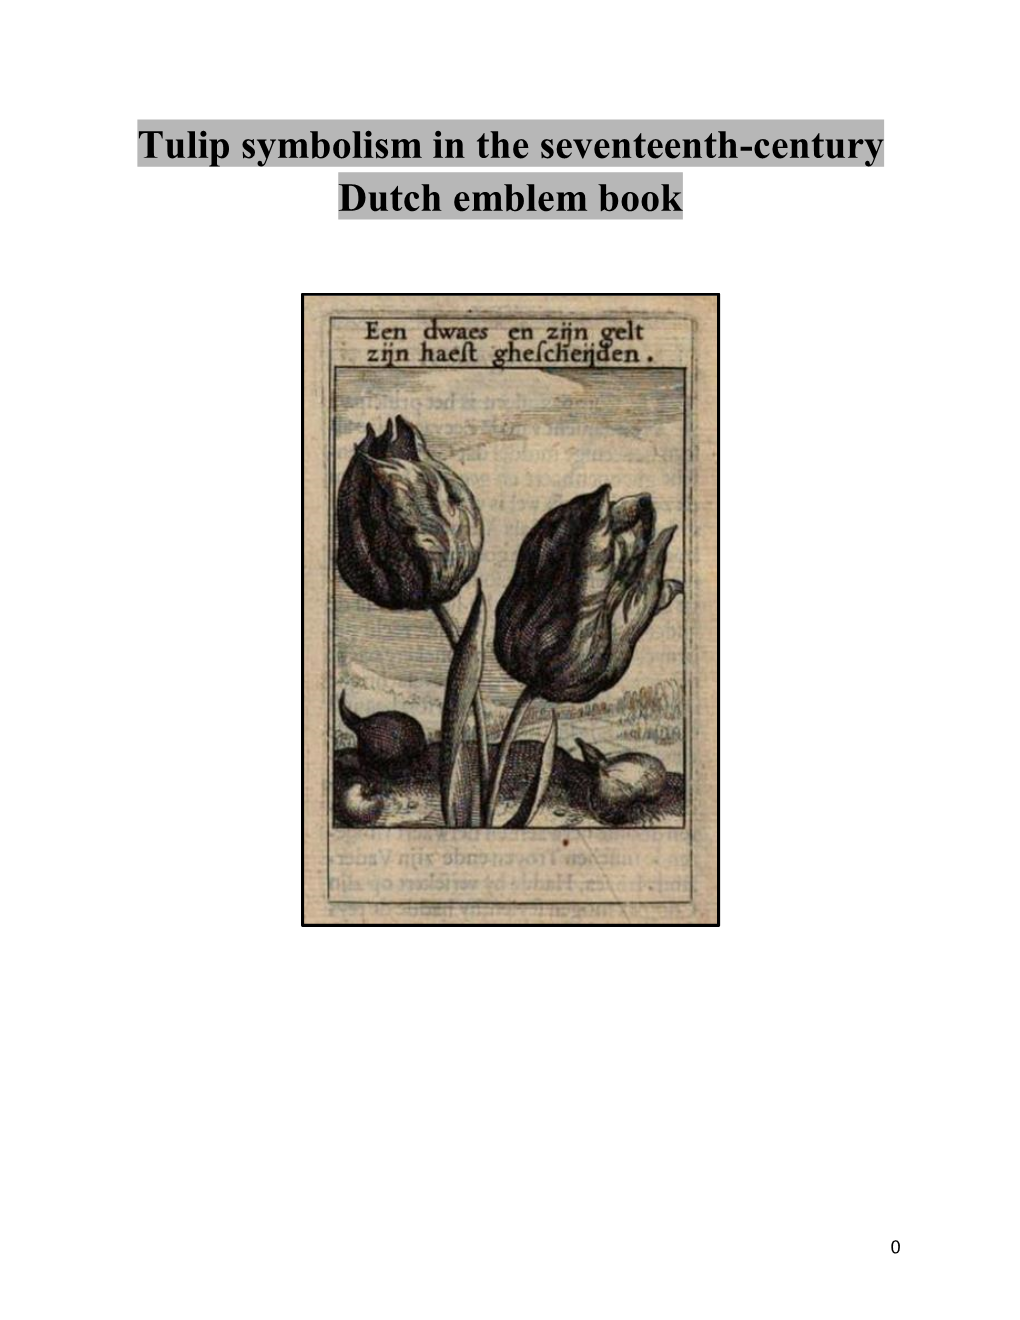 Tulip Symbolism in the Seventeenth-Century Dutch Emblem Book